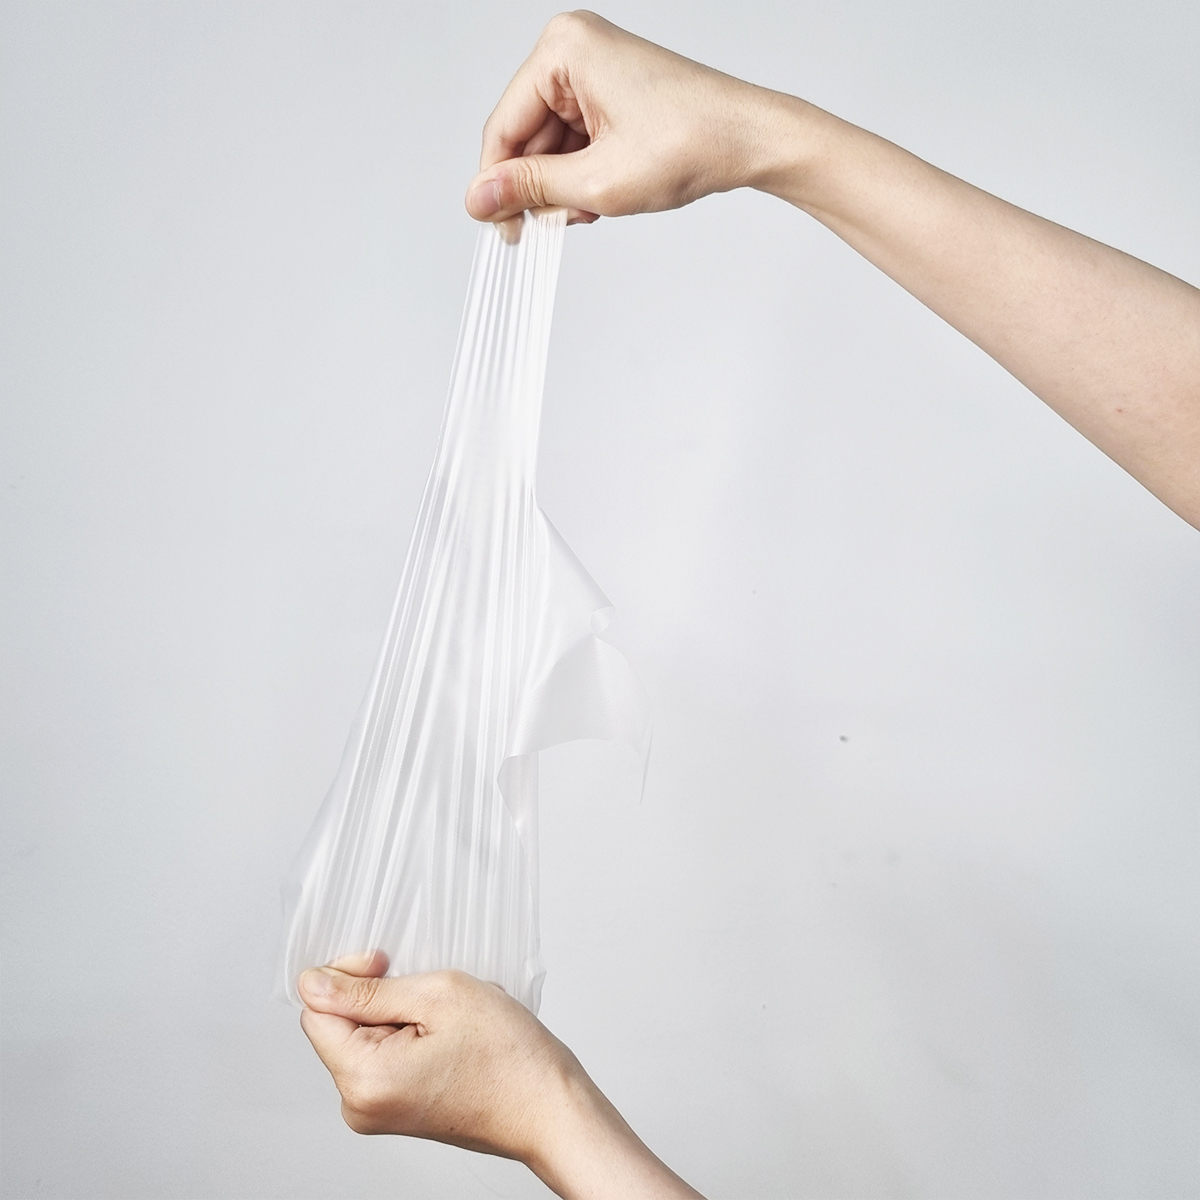 Găng tay TPE nhựa cao cấp TPP dùng 1 lần, Hộp 100 cái, Size M, L, XL